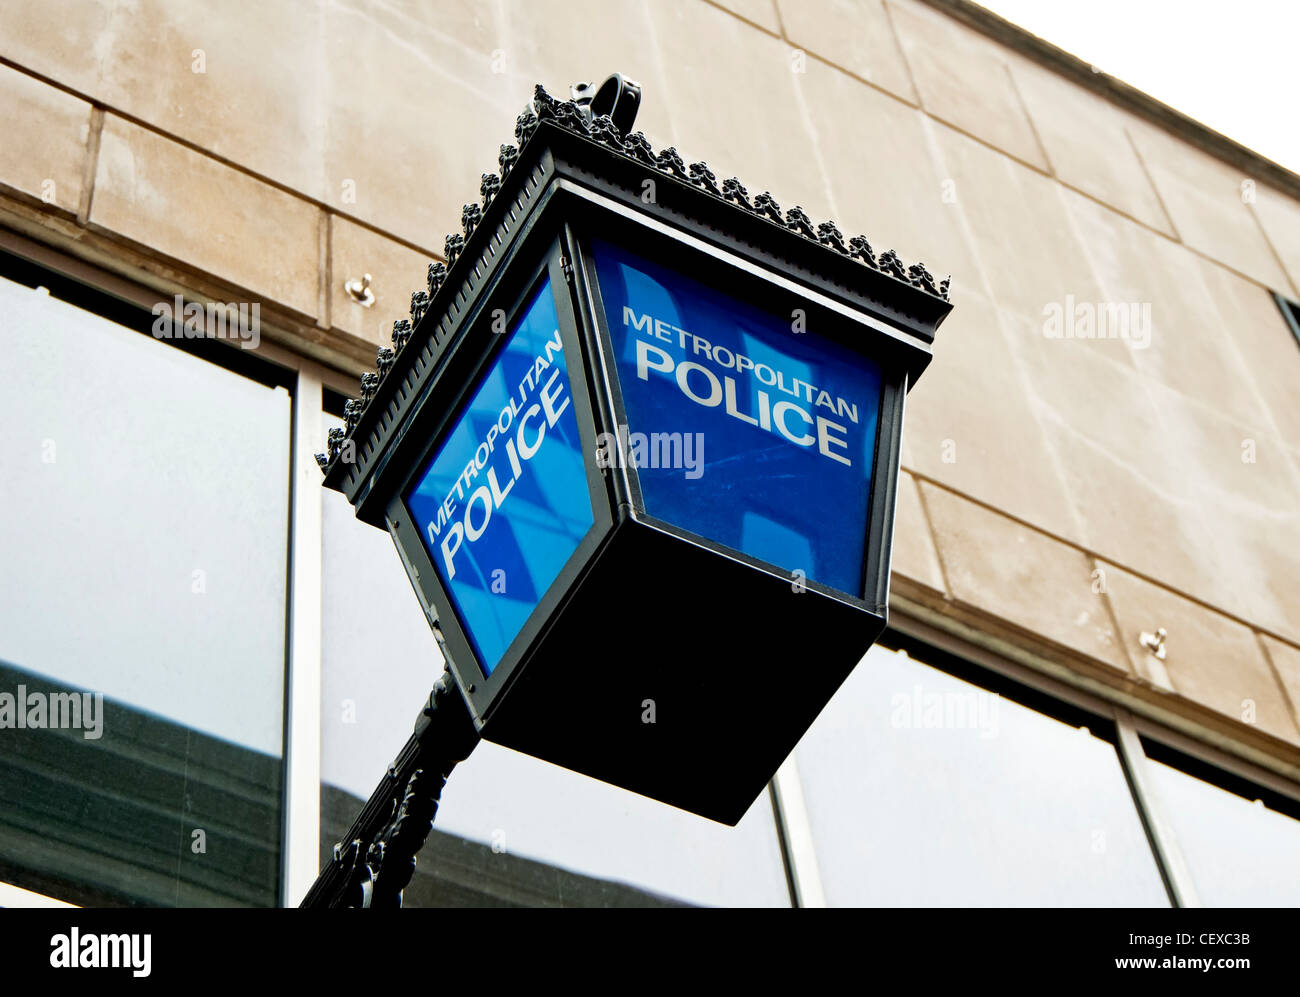 Polizeizeichen; police sign Stock Photo